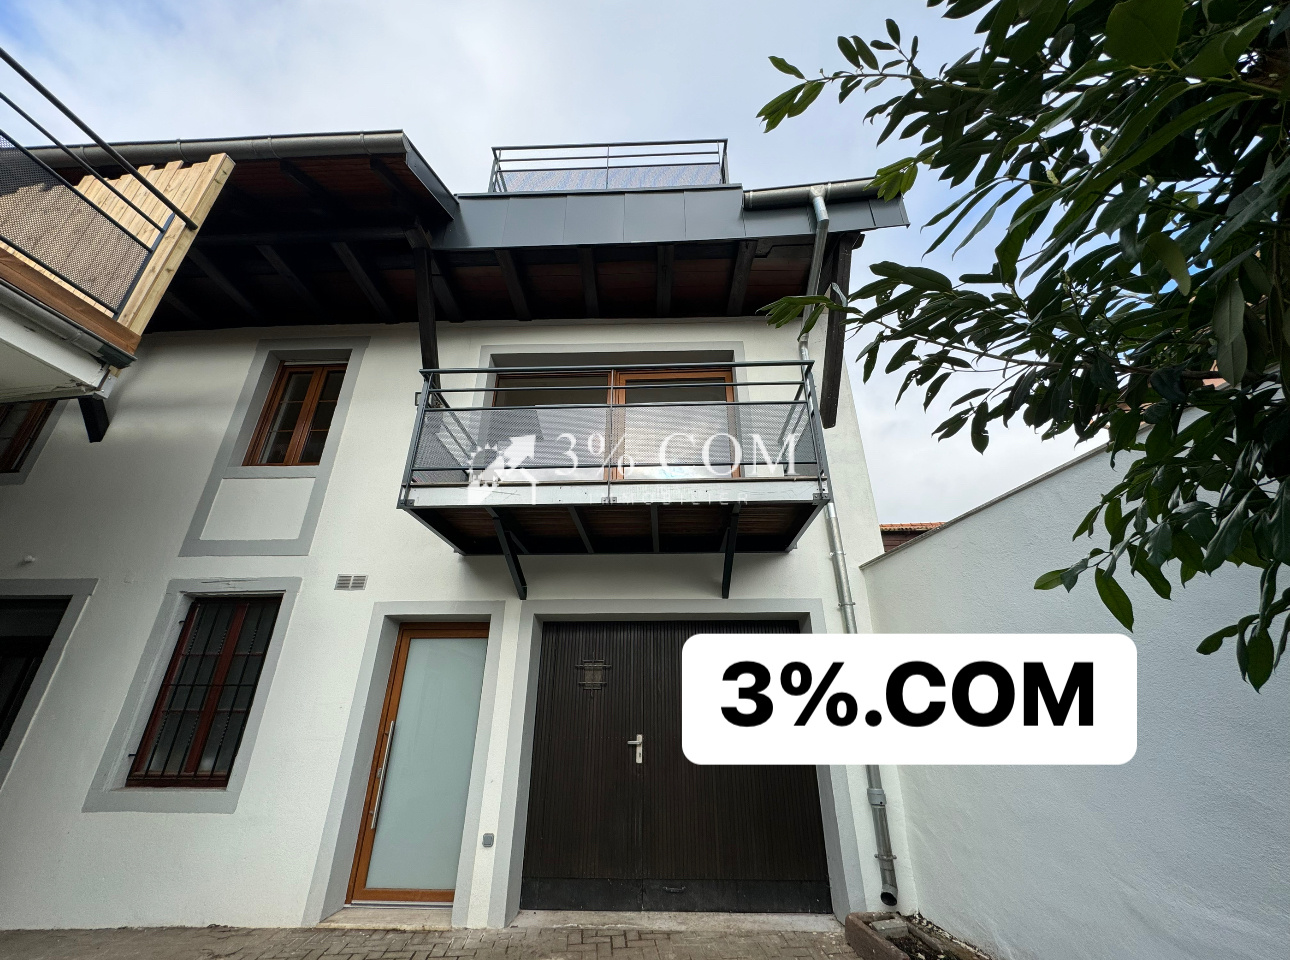 Vente Appartement 142m² 4 Pièces à Truchtersheim (67370) - 3%.Com